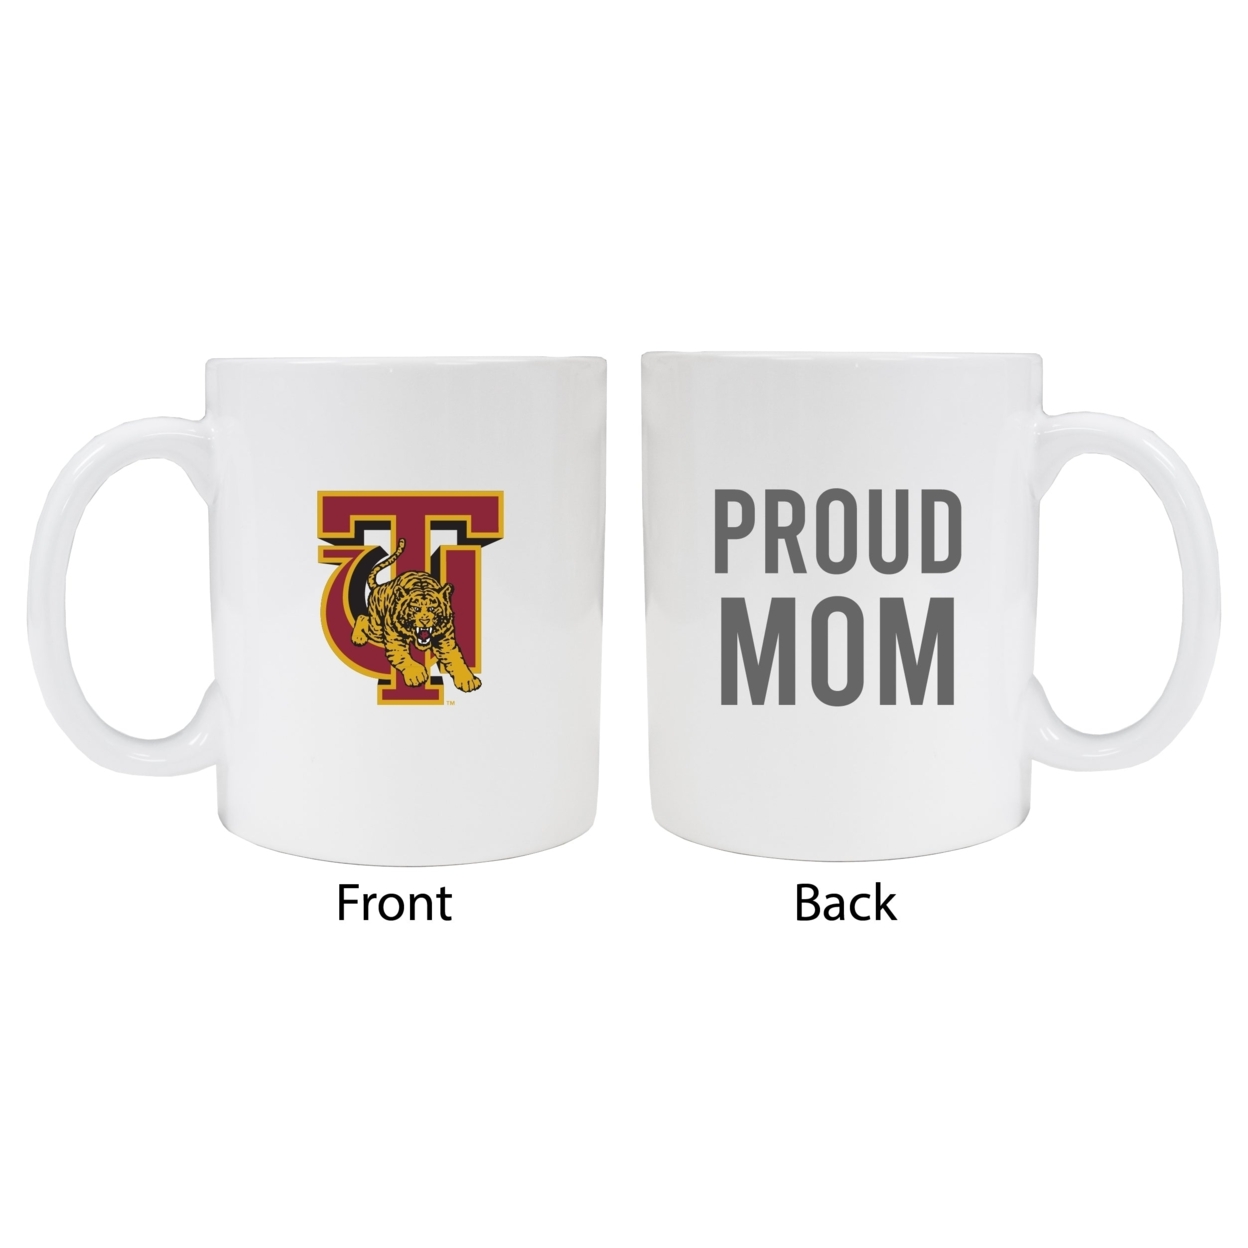 Tuskegee University Proud Mom Ceramic Coffee Mug - White